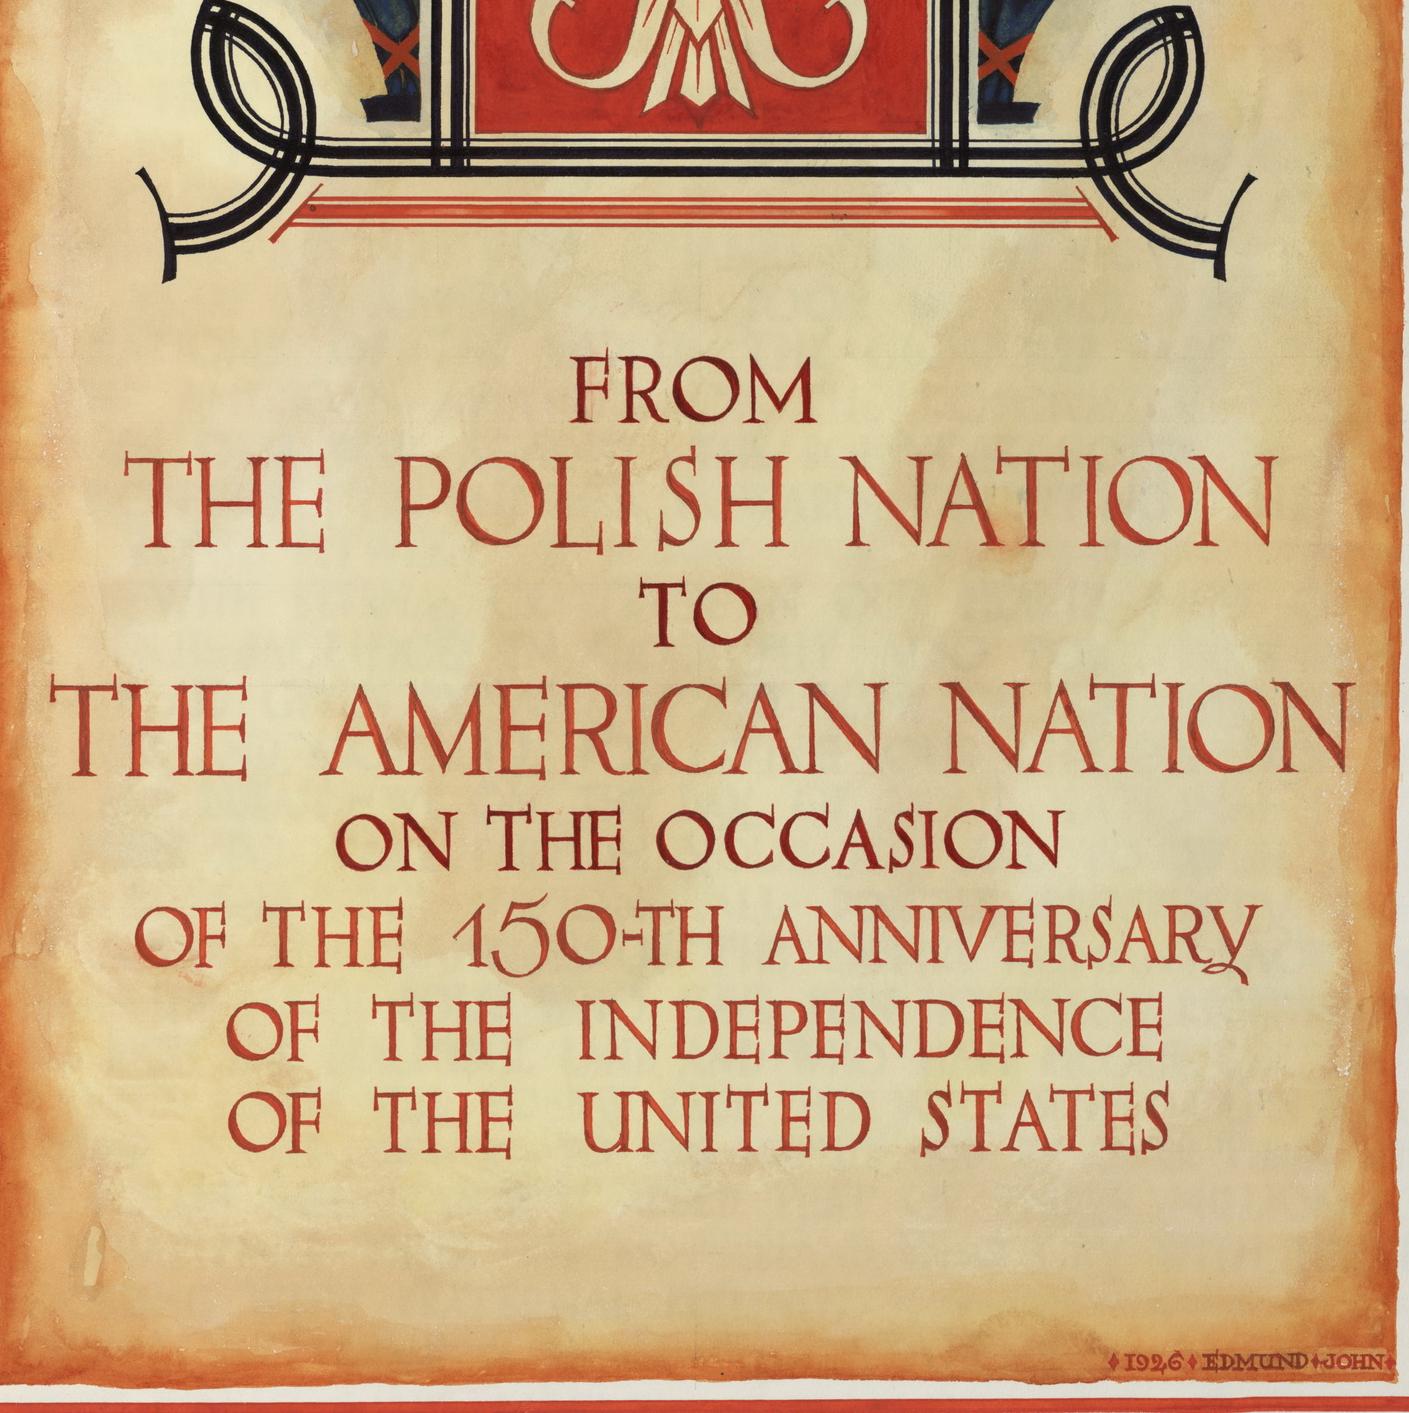 Deklaracja podziwu i przyjaźni dla USA z 1926 roku jako źródło wiedzy o społeczeństwie II RP